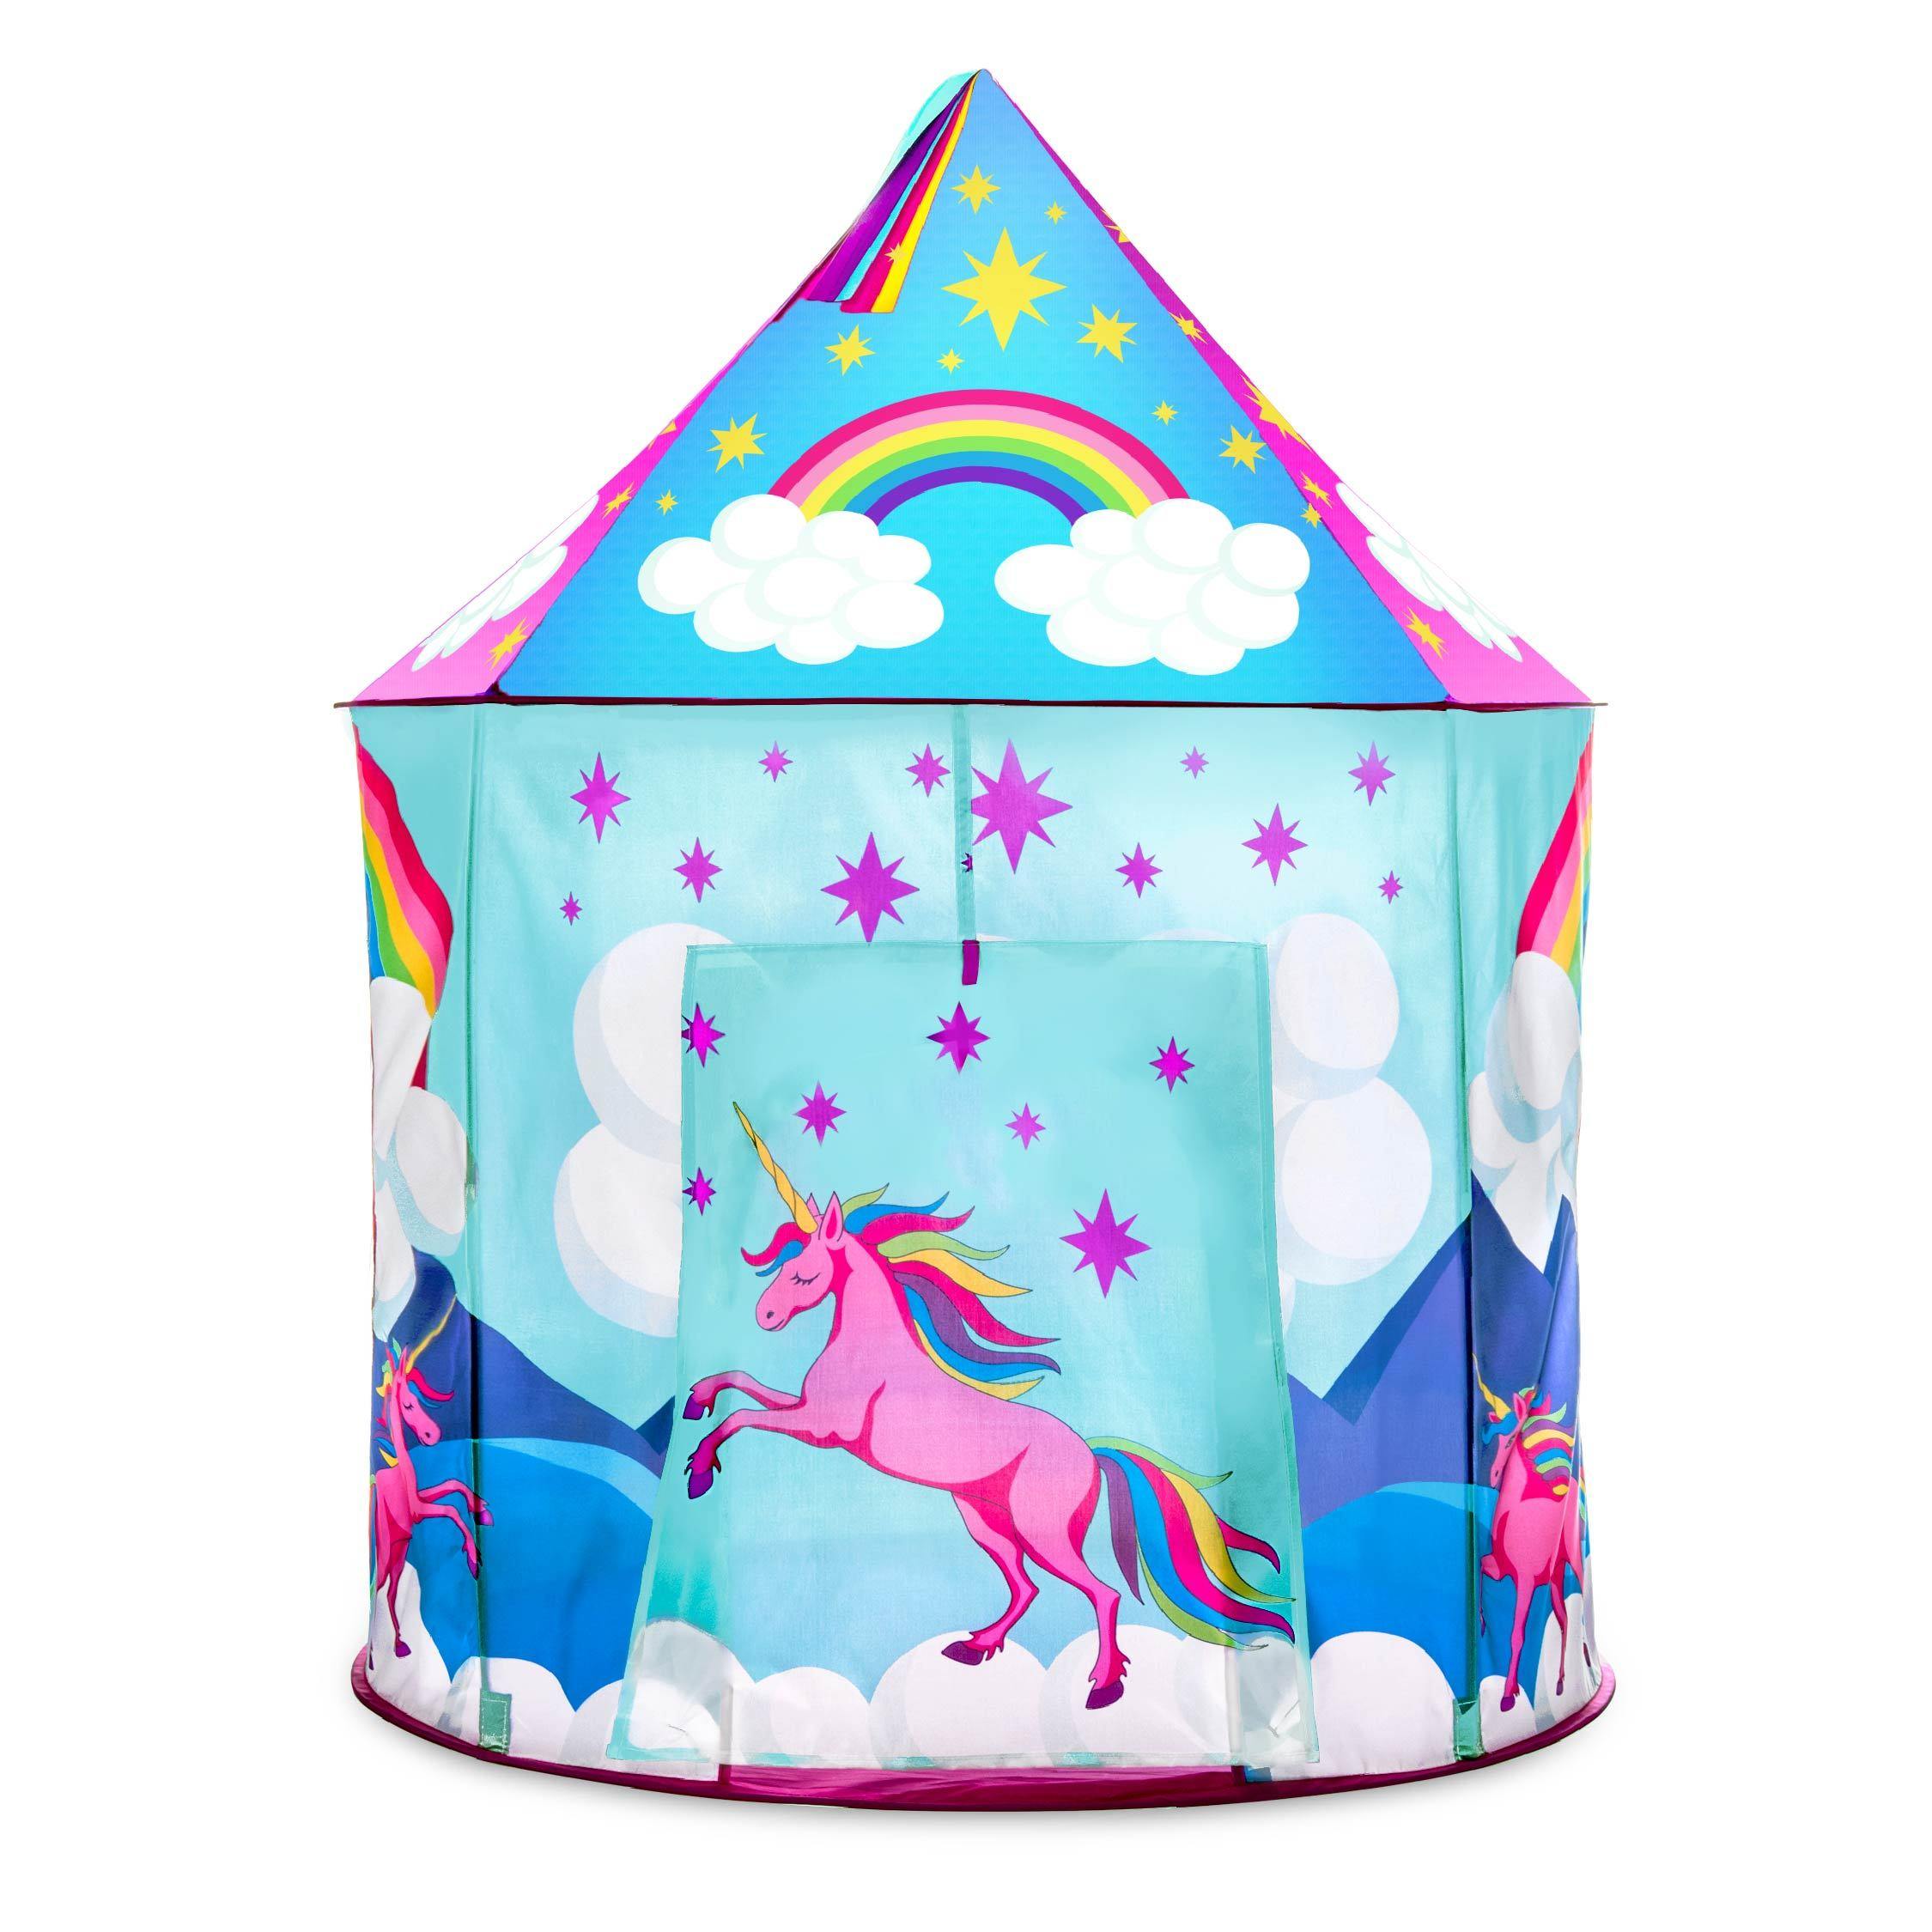 USA Toyz 4524MU1 Unicorn Pop Up Kids Tent for sale online 